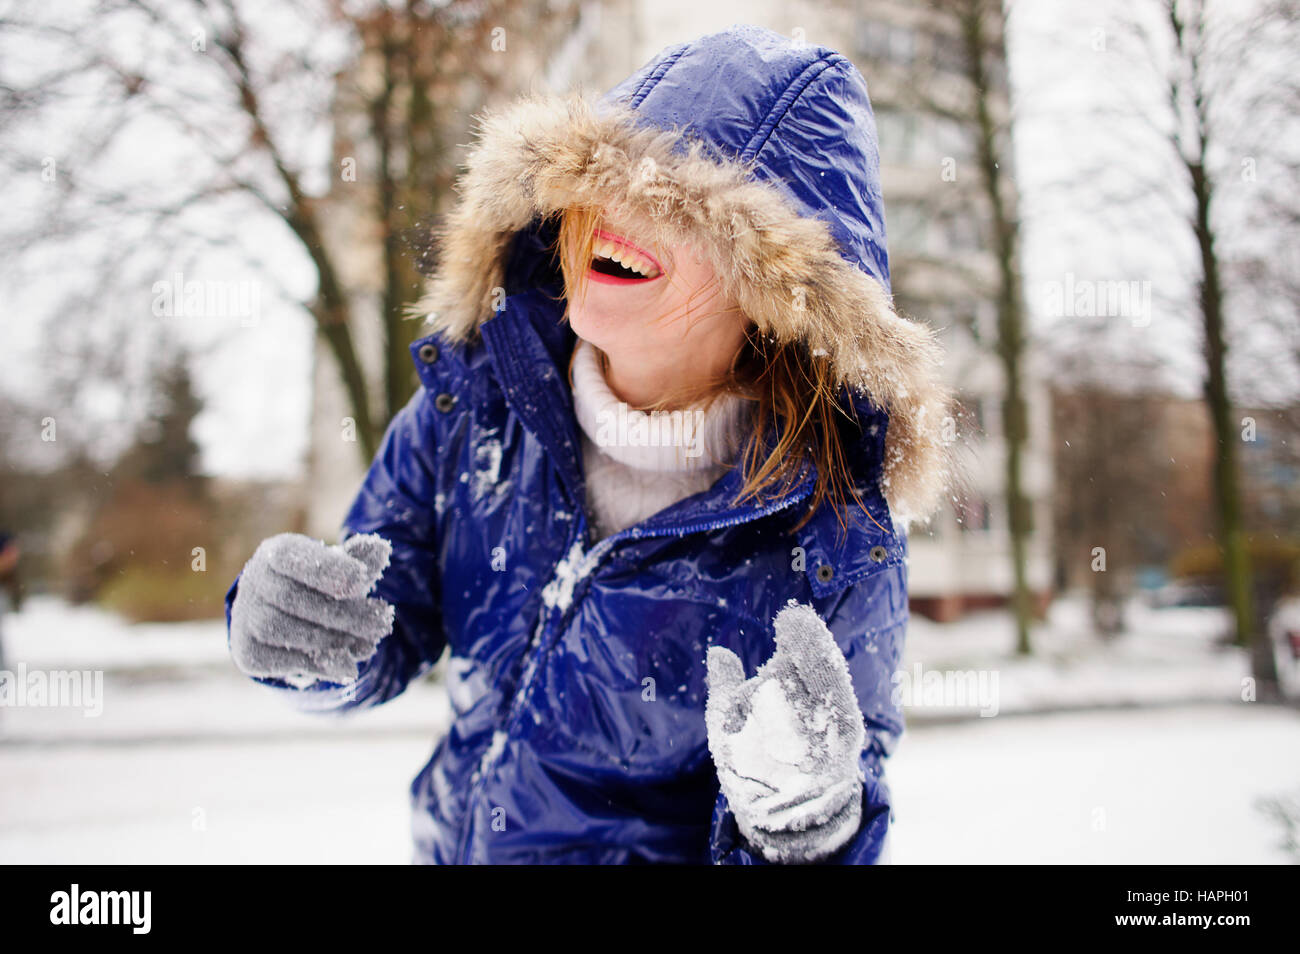 Jeune femme rire après lutte par des boules de neige. Le visage de la femme  est à moitié caché par une capuche. Un manteau et des gants dans la neige,  les cheveux